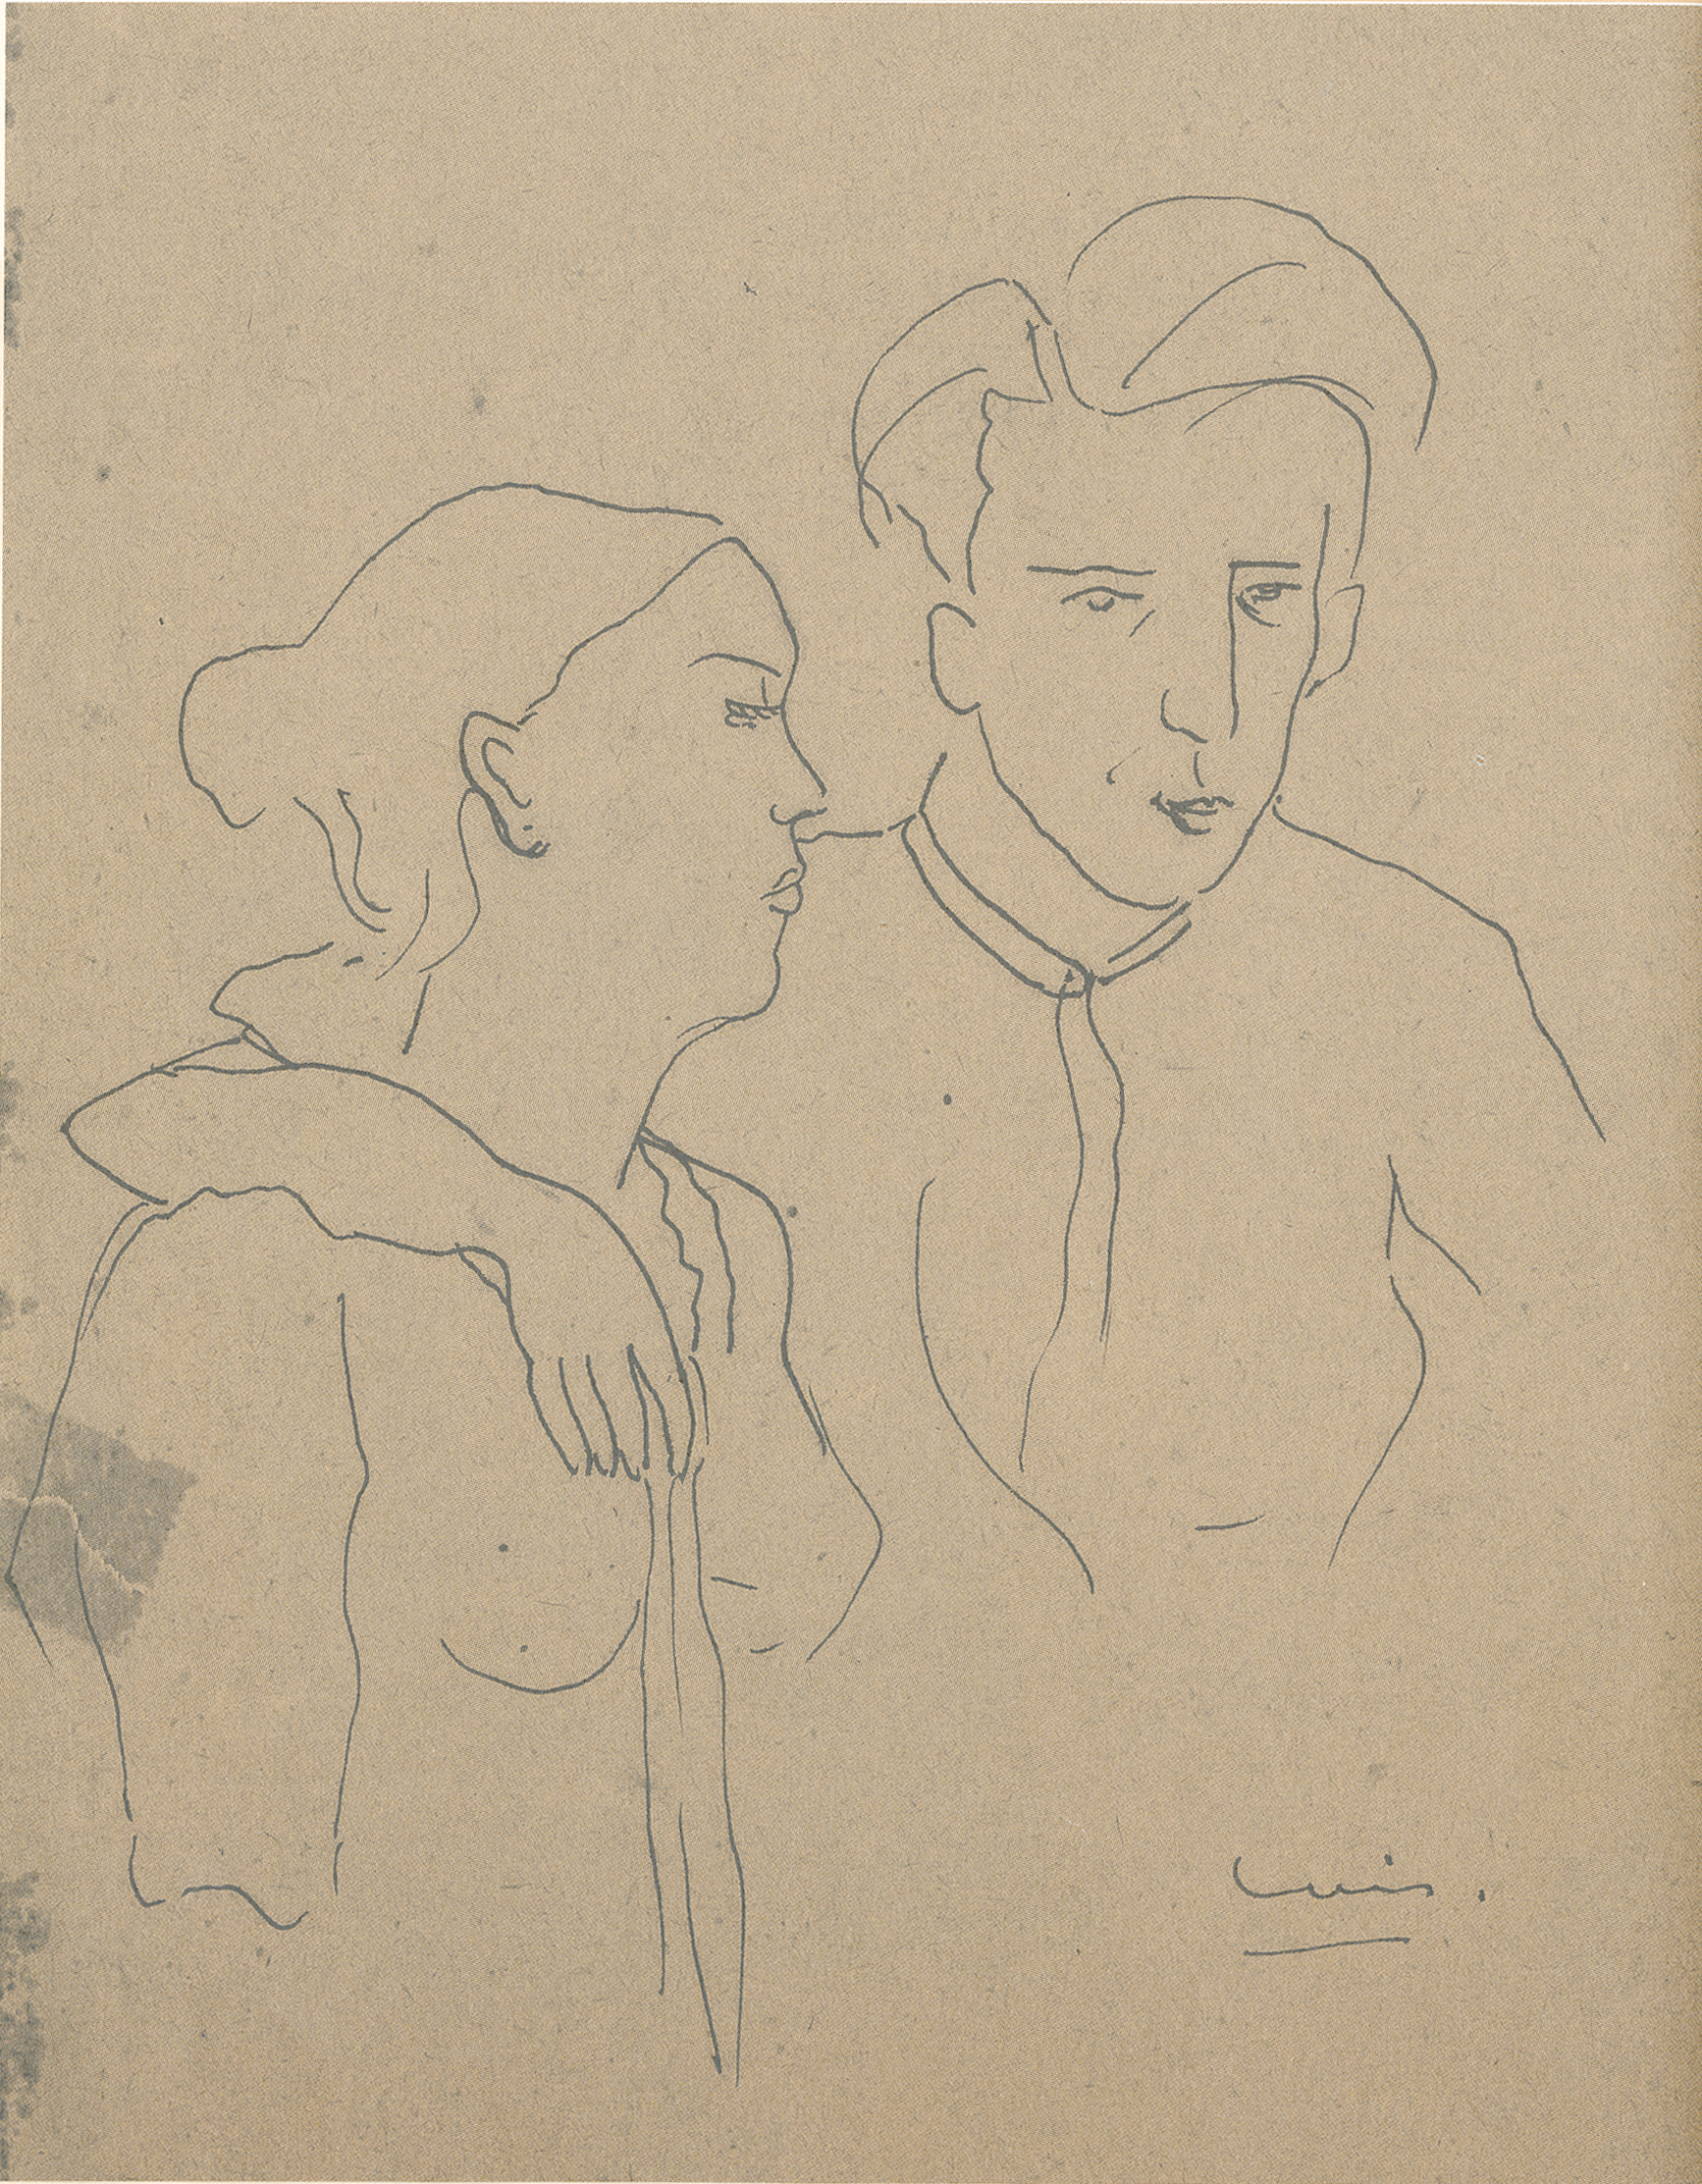 Sem título (Tarsila e Luís), 1945, por Luís Martins. Nanquim s/ papel, 27.5 x 20.3 cm. Coleção particular da família Luís Martins.